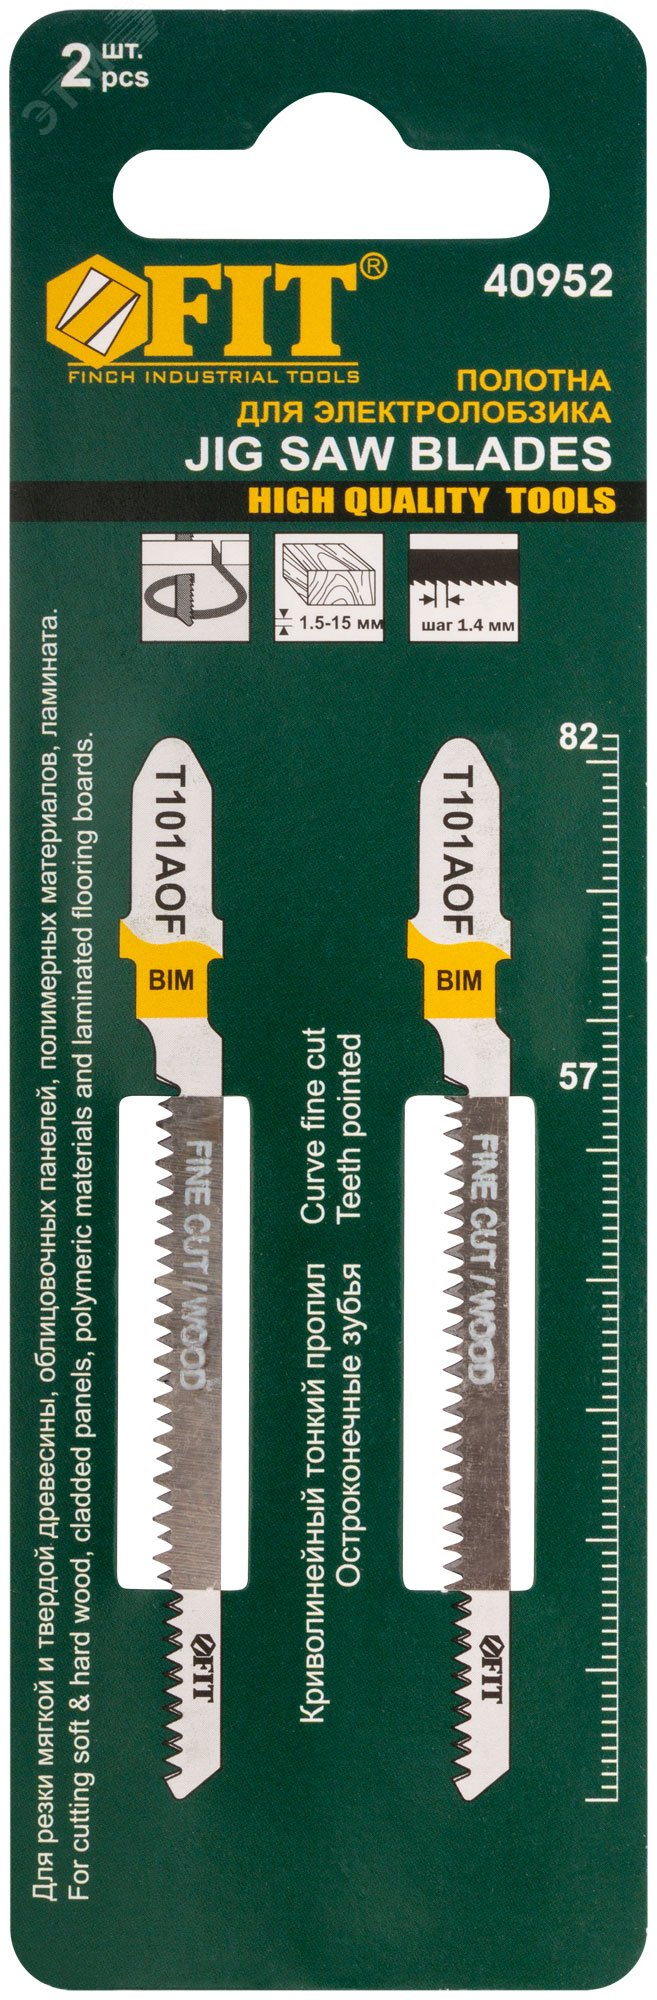 Полотна по дереву, Bimetal, остроконечные зубья, 82/57/1.4 мм (Т101AOF), 2 шт 40952 FIT - превью 3